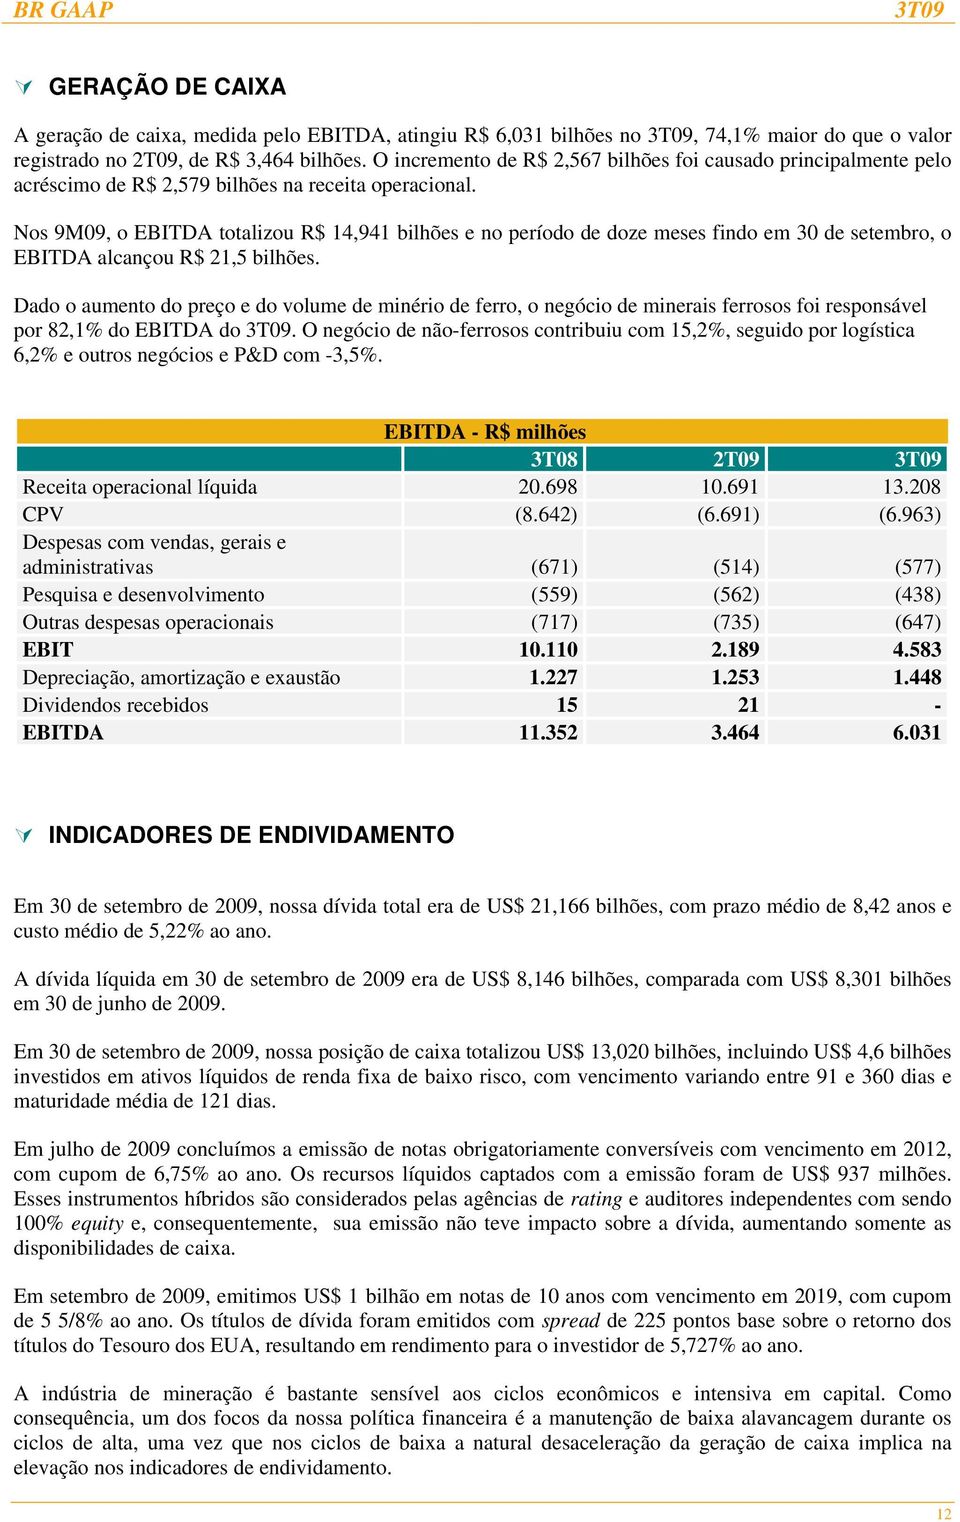 Nos 9M09, o EBITDA totalizou R$ 14,941 bilhões e no período de doze meses findo em 30 de setembro, o EBITDA alcançou R$ 21,5 bilhões.